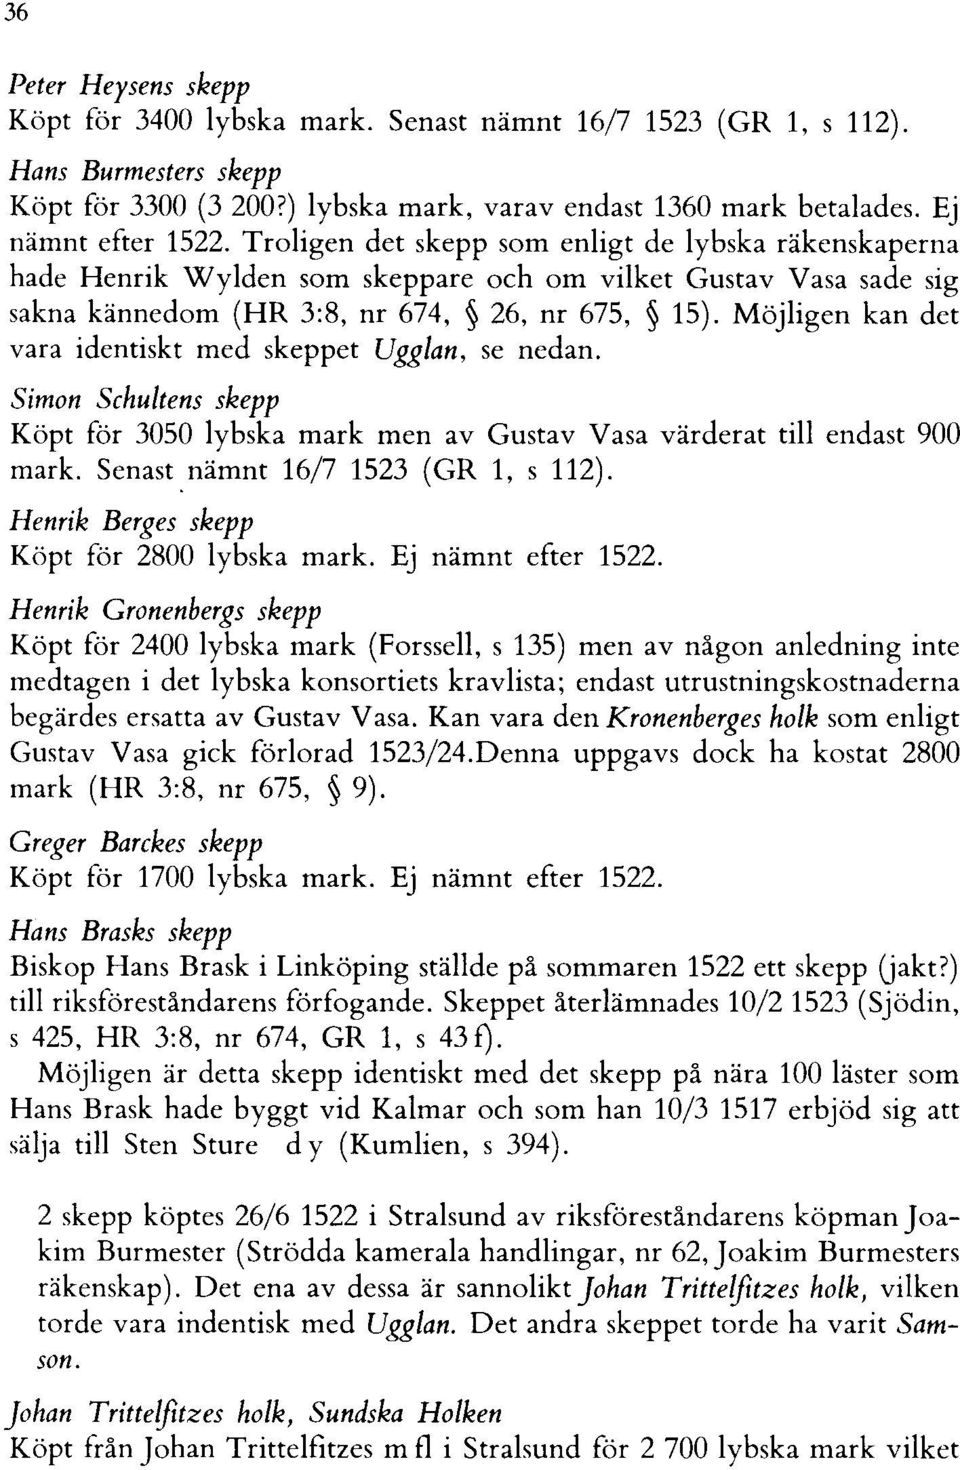 Möjligen kan det vara identiskt med skeppet Ugglan, se nedan. Simon Schultens skepp Köpt för 3050 lybska mark men av Gustav Vasa värderat till endast 900 mark. Senast,nämnt 16/7 1523 (GR 1, s 112).